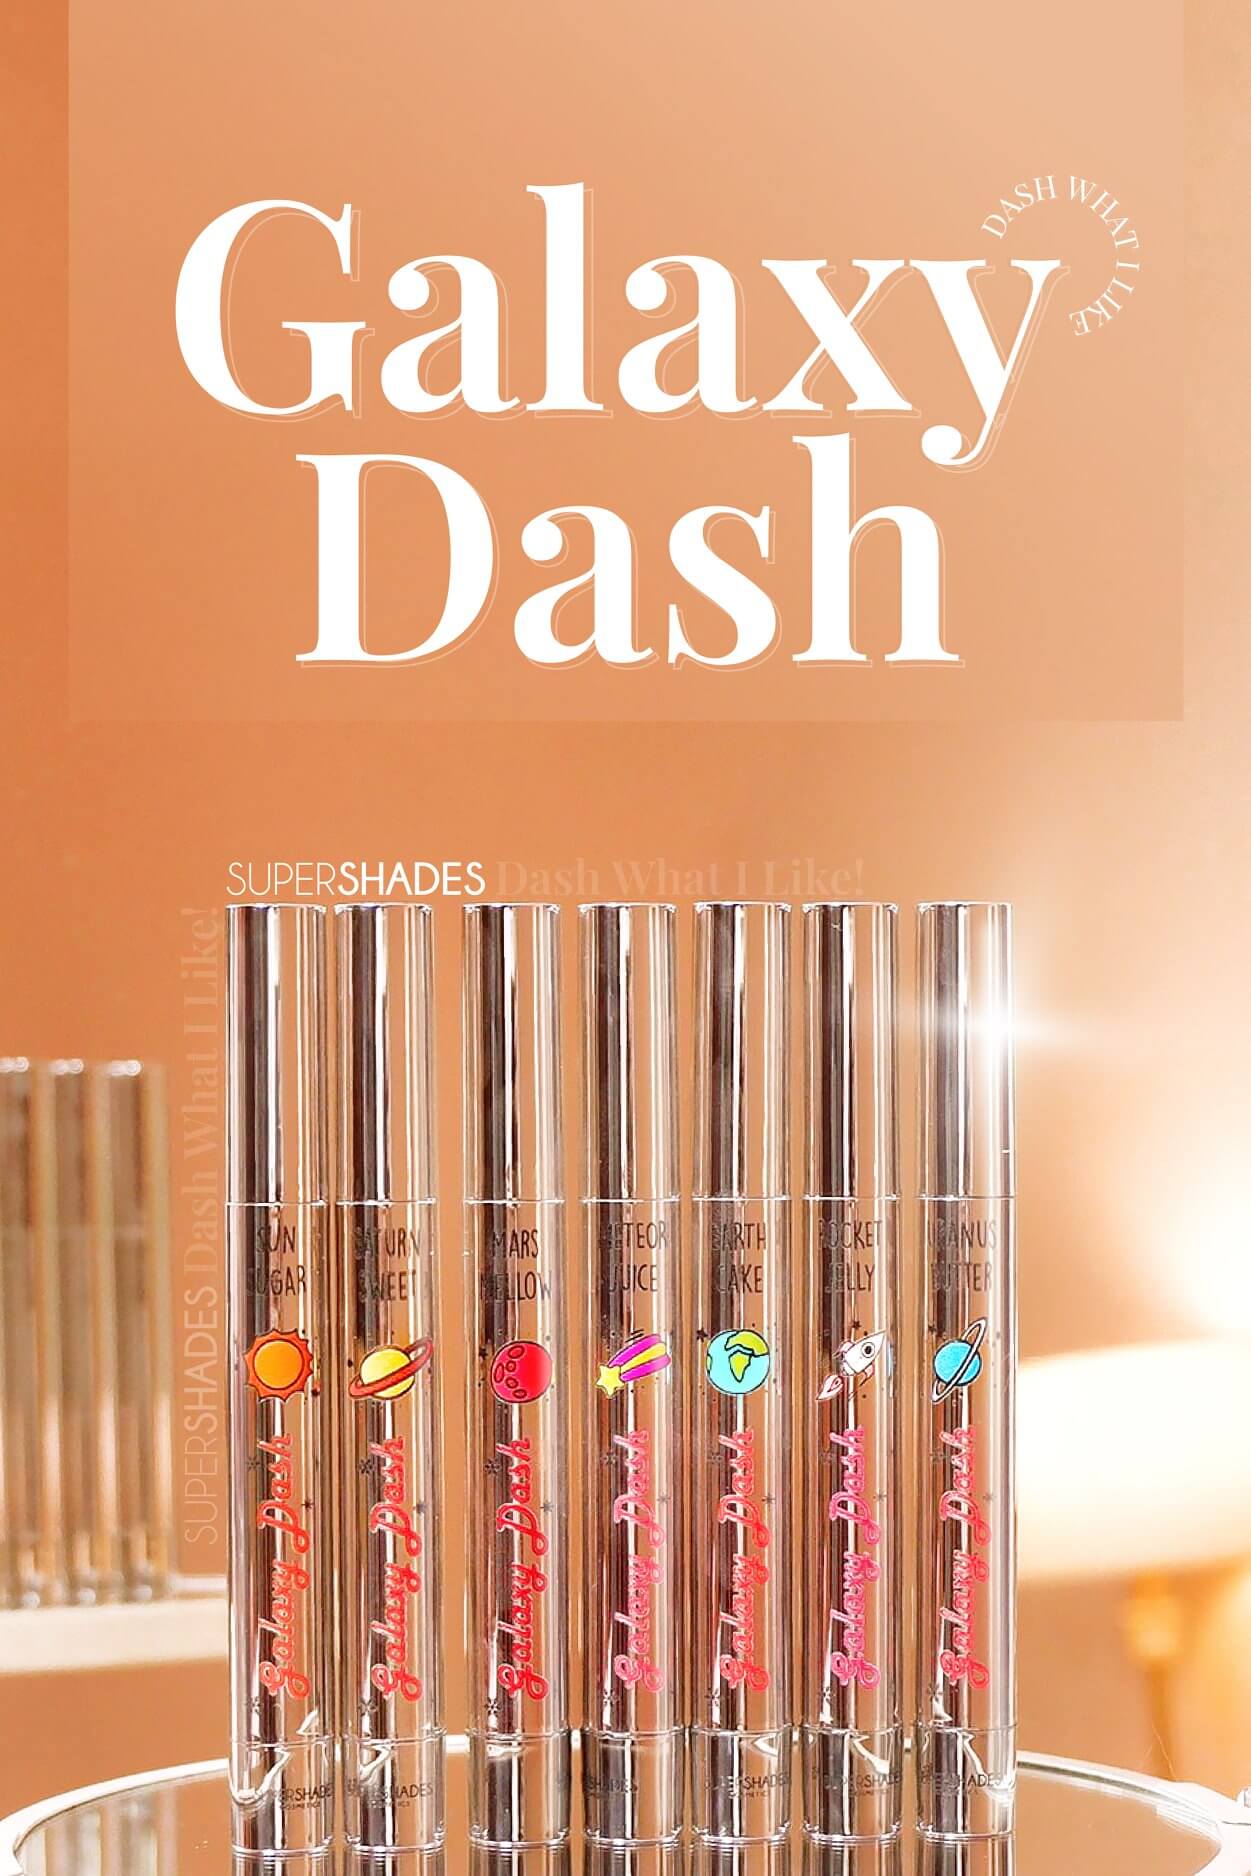 Supershades, Galaxy Dash,Supershades Galaxy Dash,ลิปวอเตอร์ทินท์ ,ลิปทินท์,Galaxy Collection